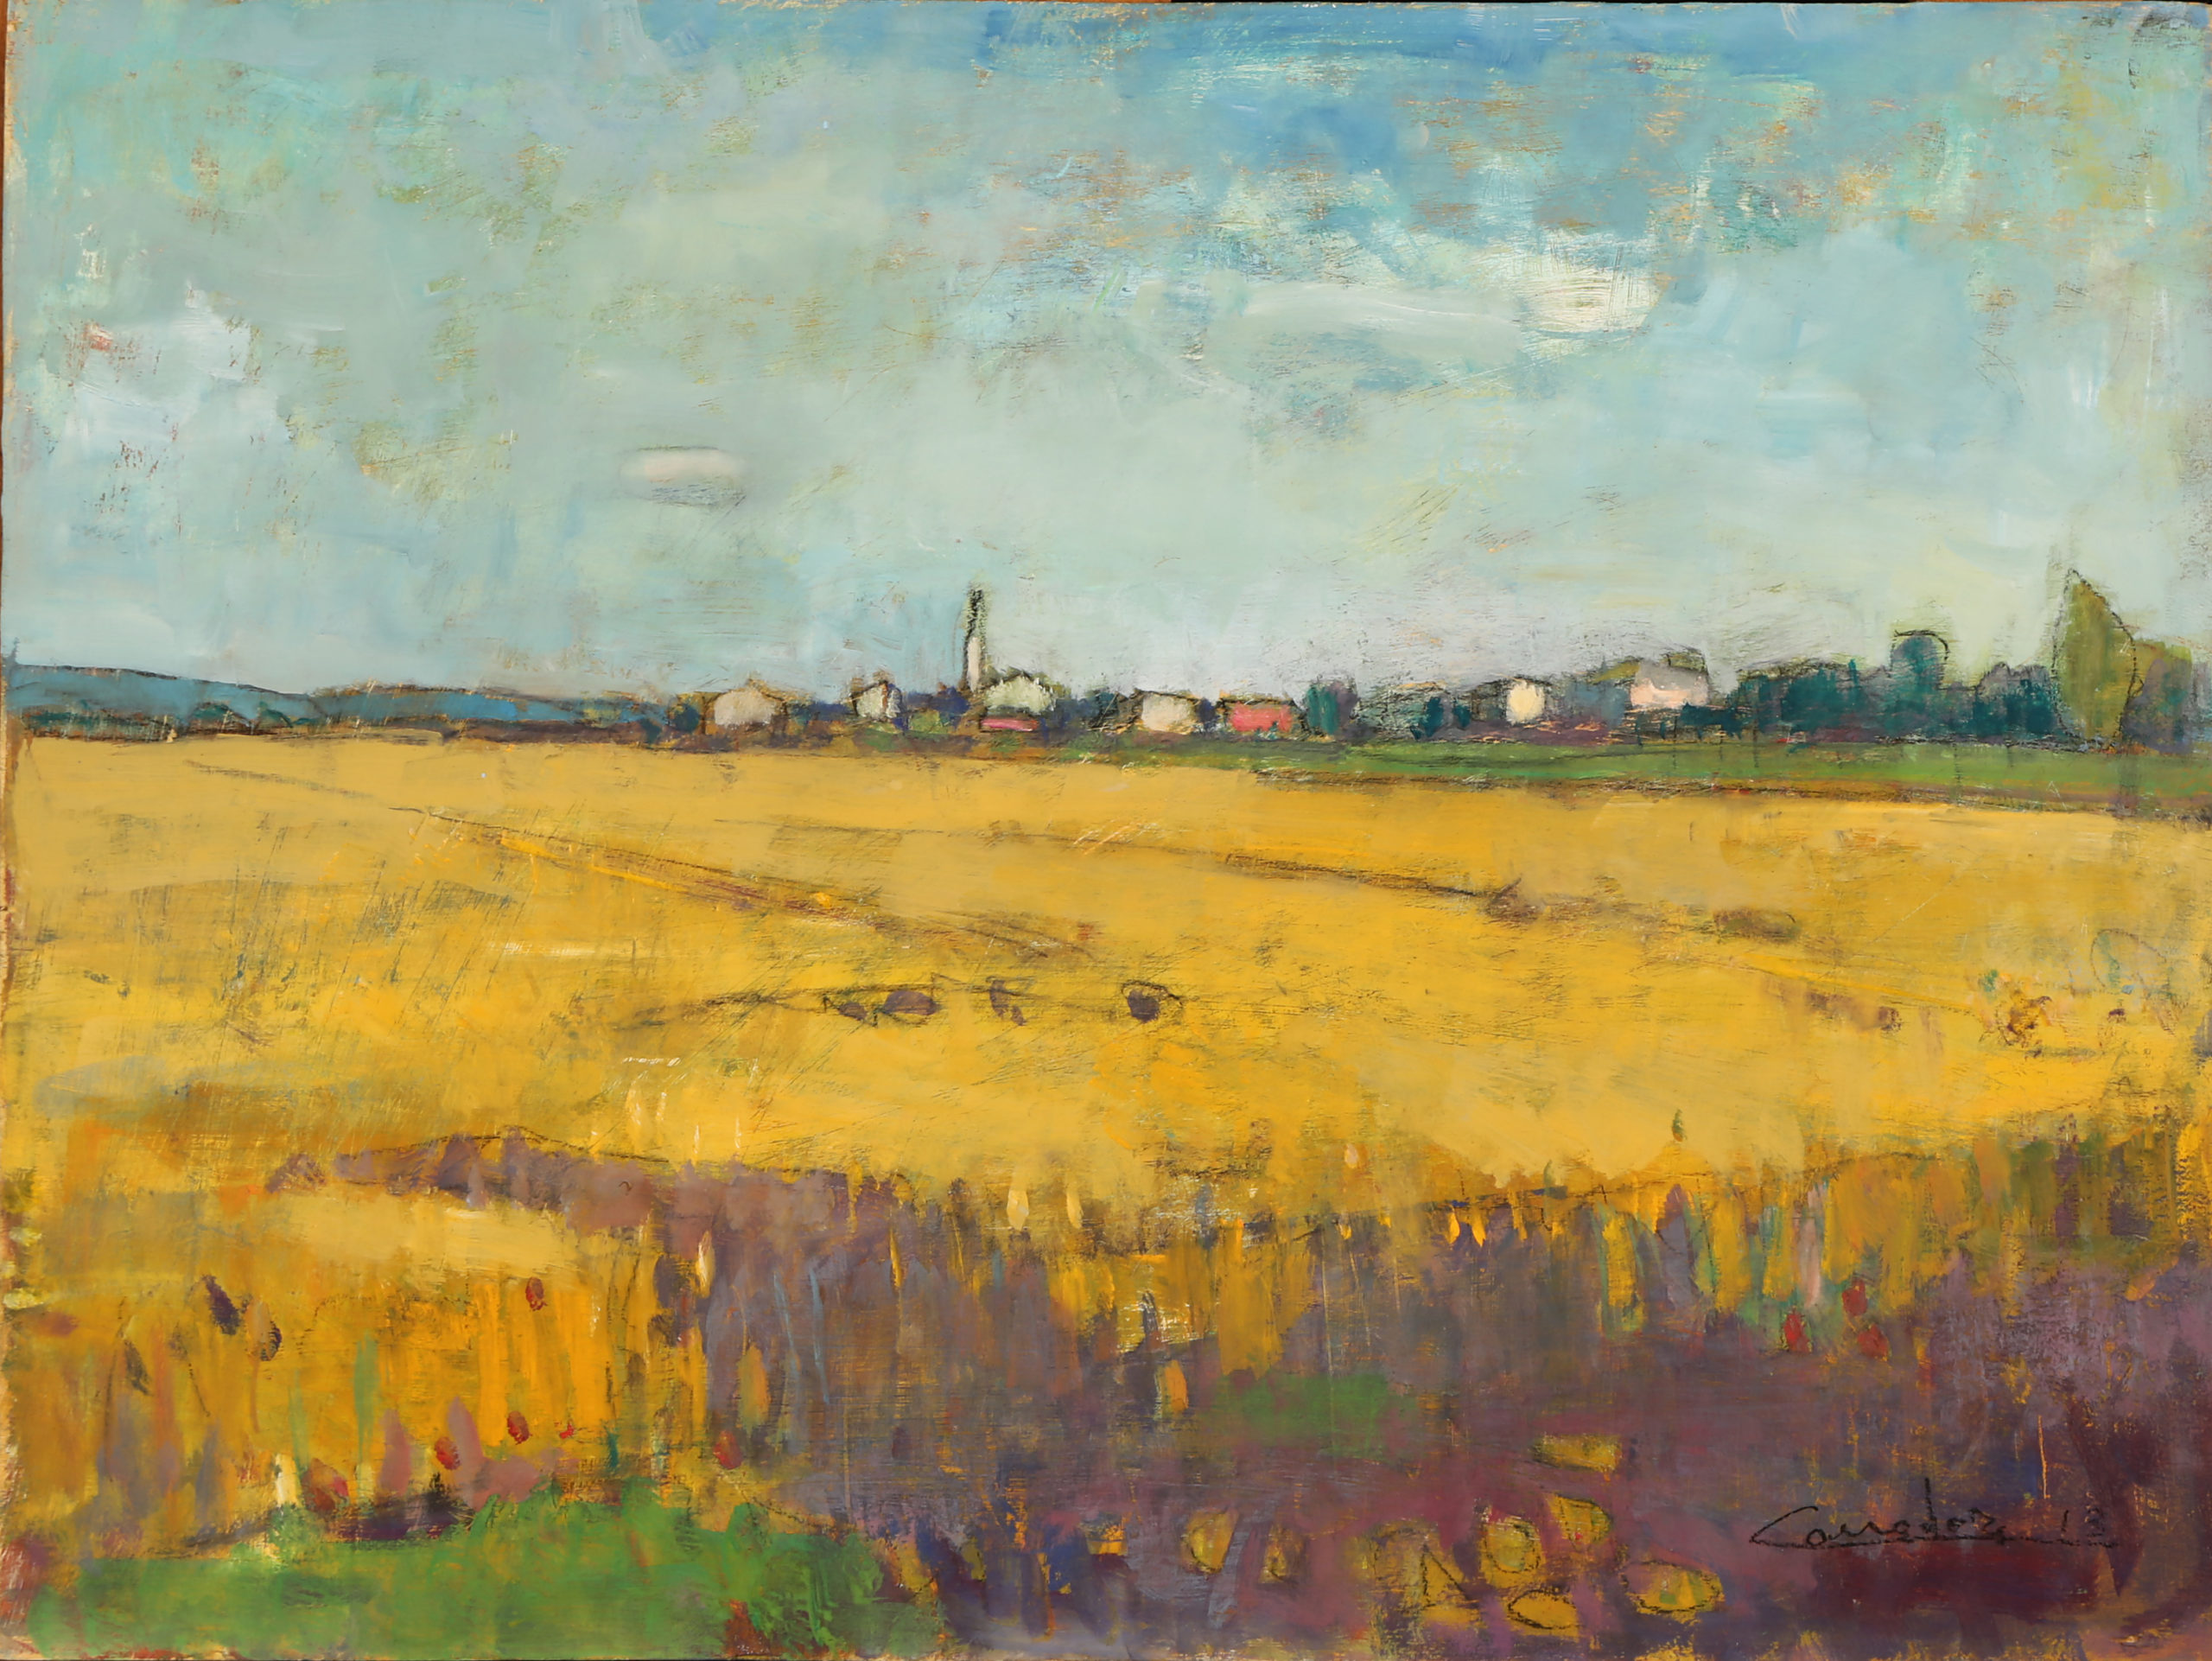 Campo di grano, cm 30x40, olio su tavola, 2013, collezione privata